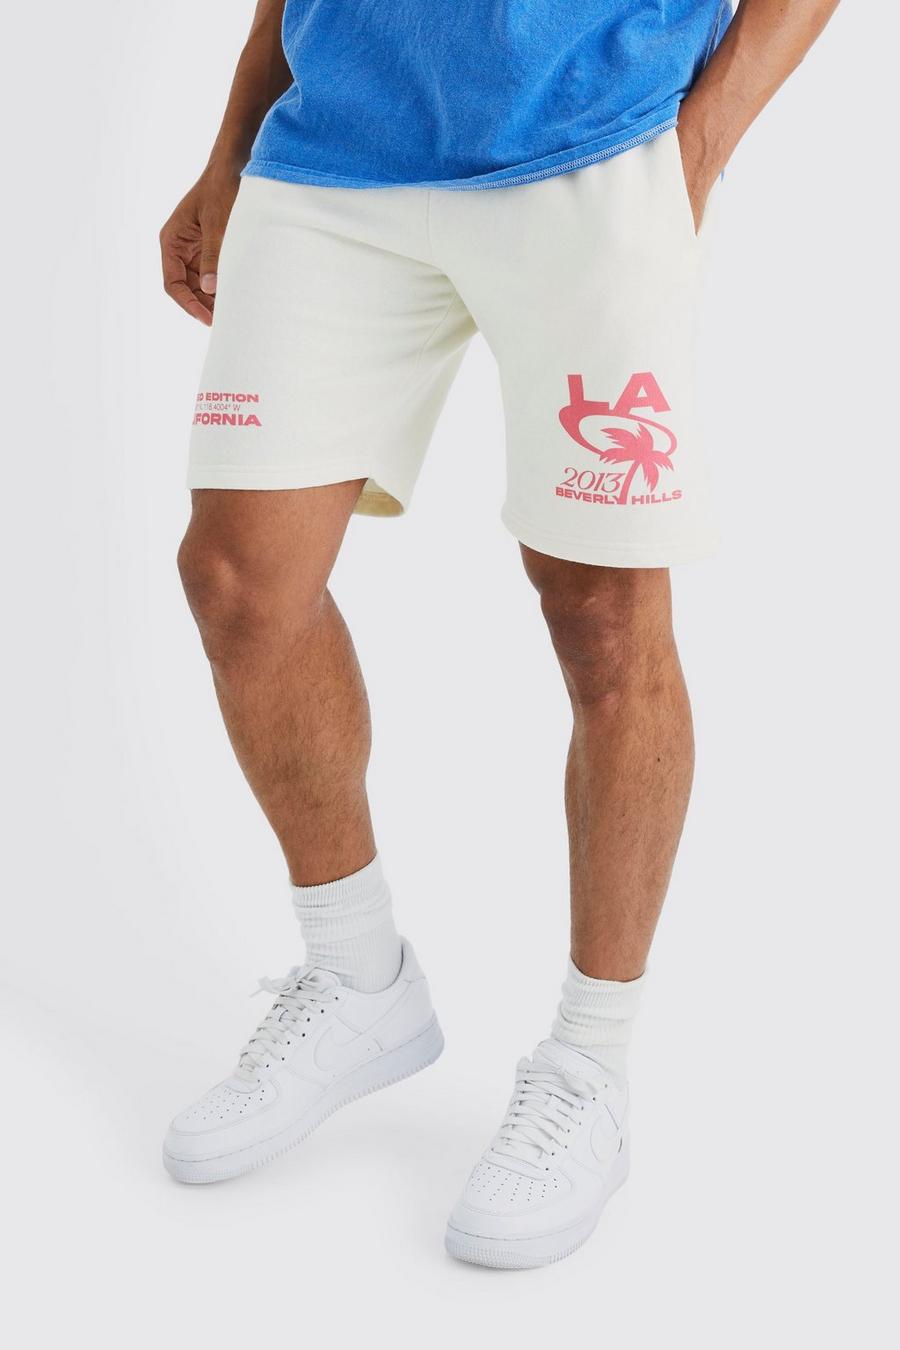 Lockere Jersey-Shorts mit Palm La Hills Print, Ecru